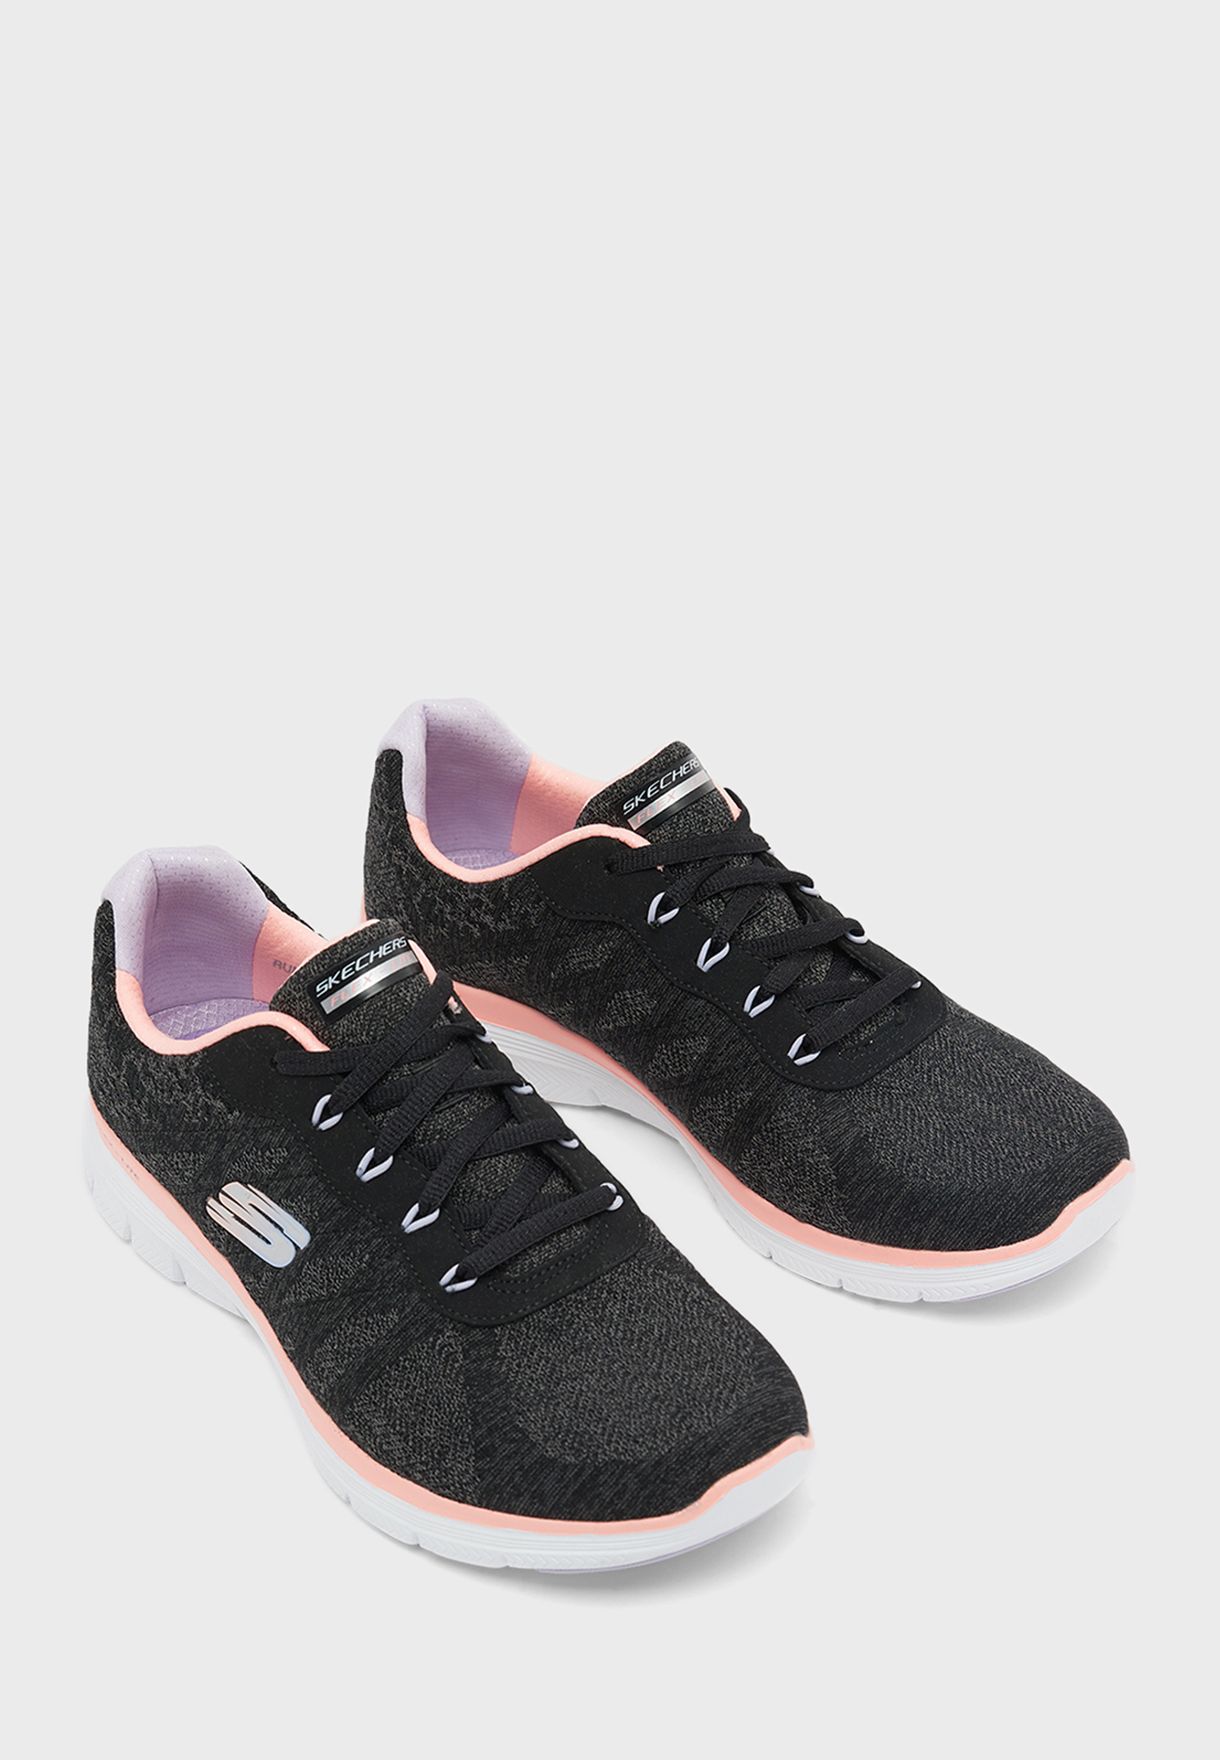 Flex Appeal 4.0 Walking Shoes